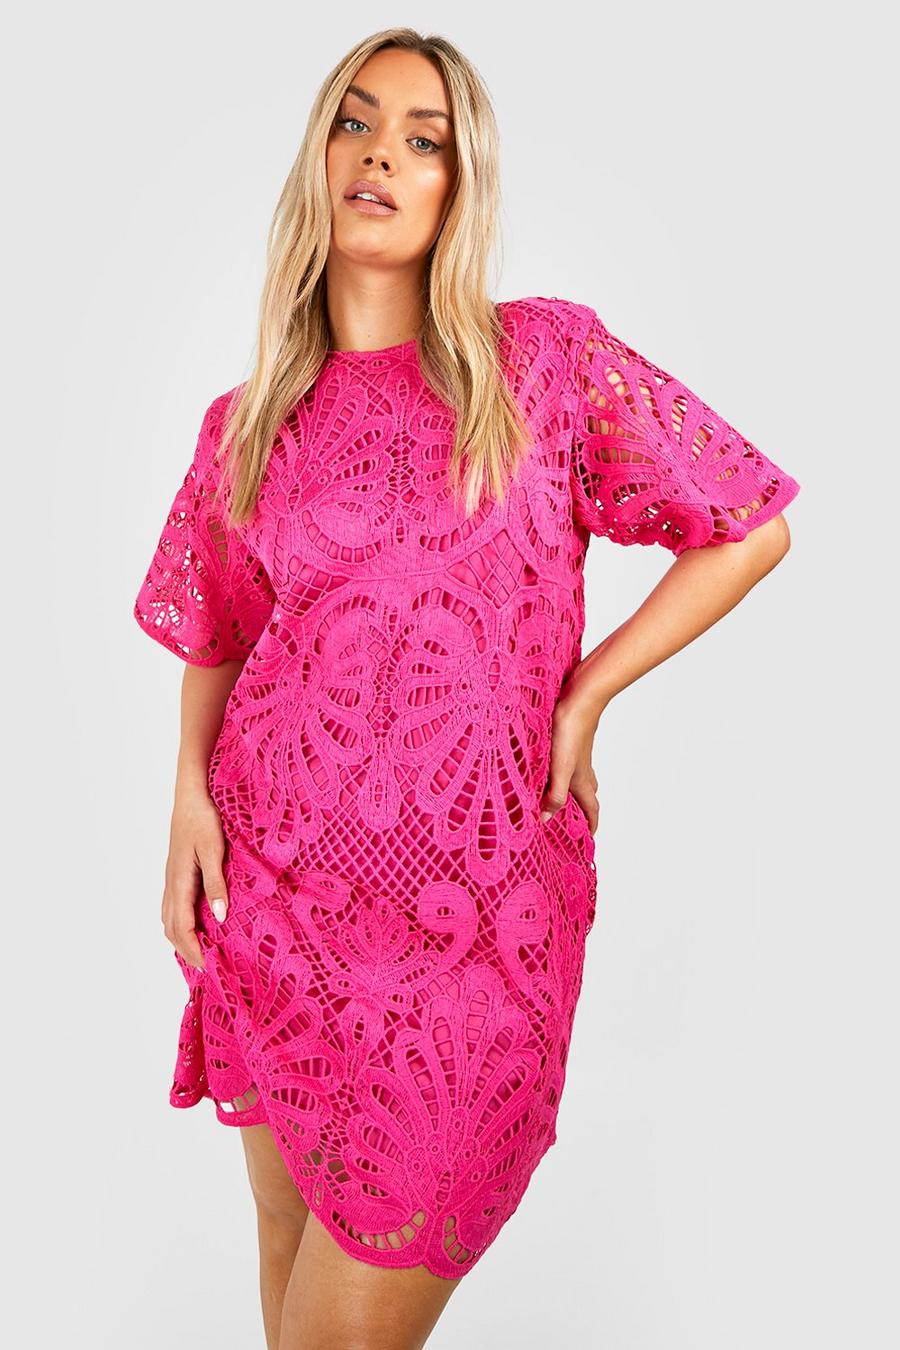 Plus Premium Crochet Lace Shift Dress, Hot pink rosa